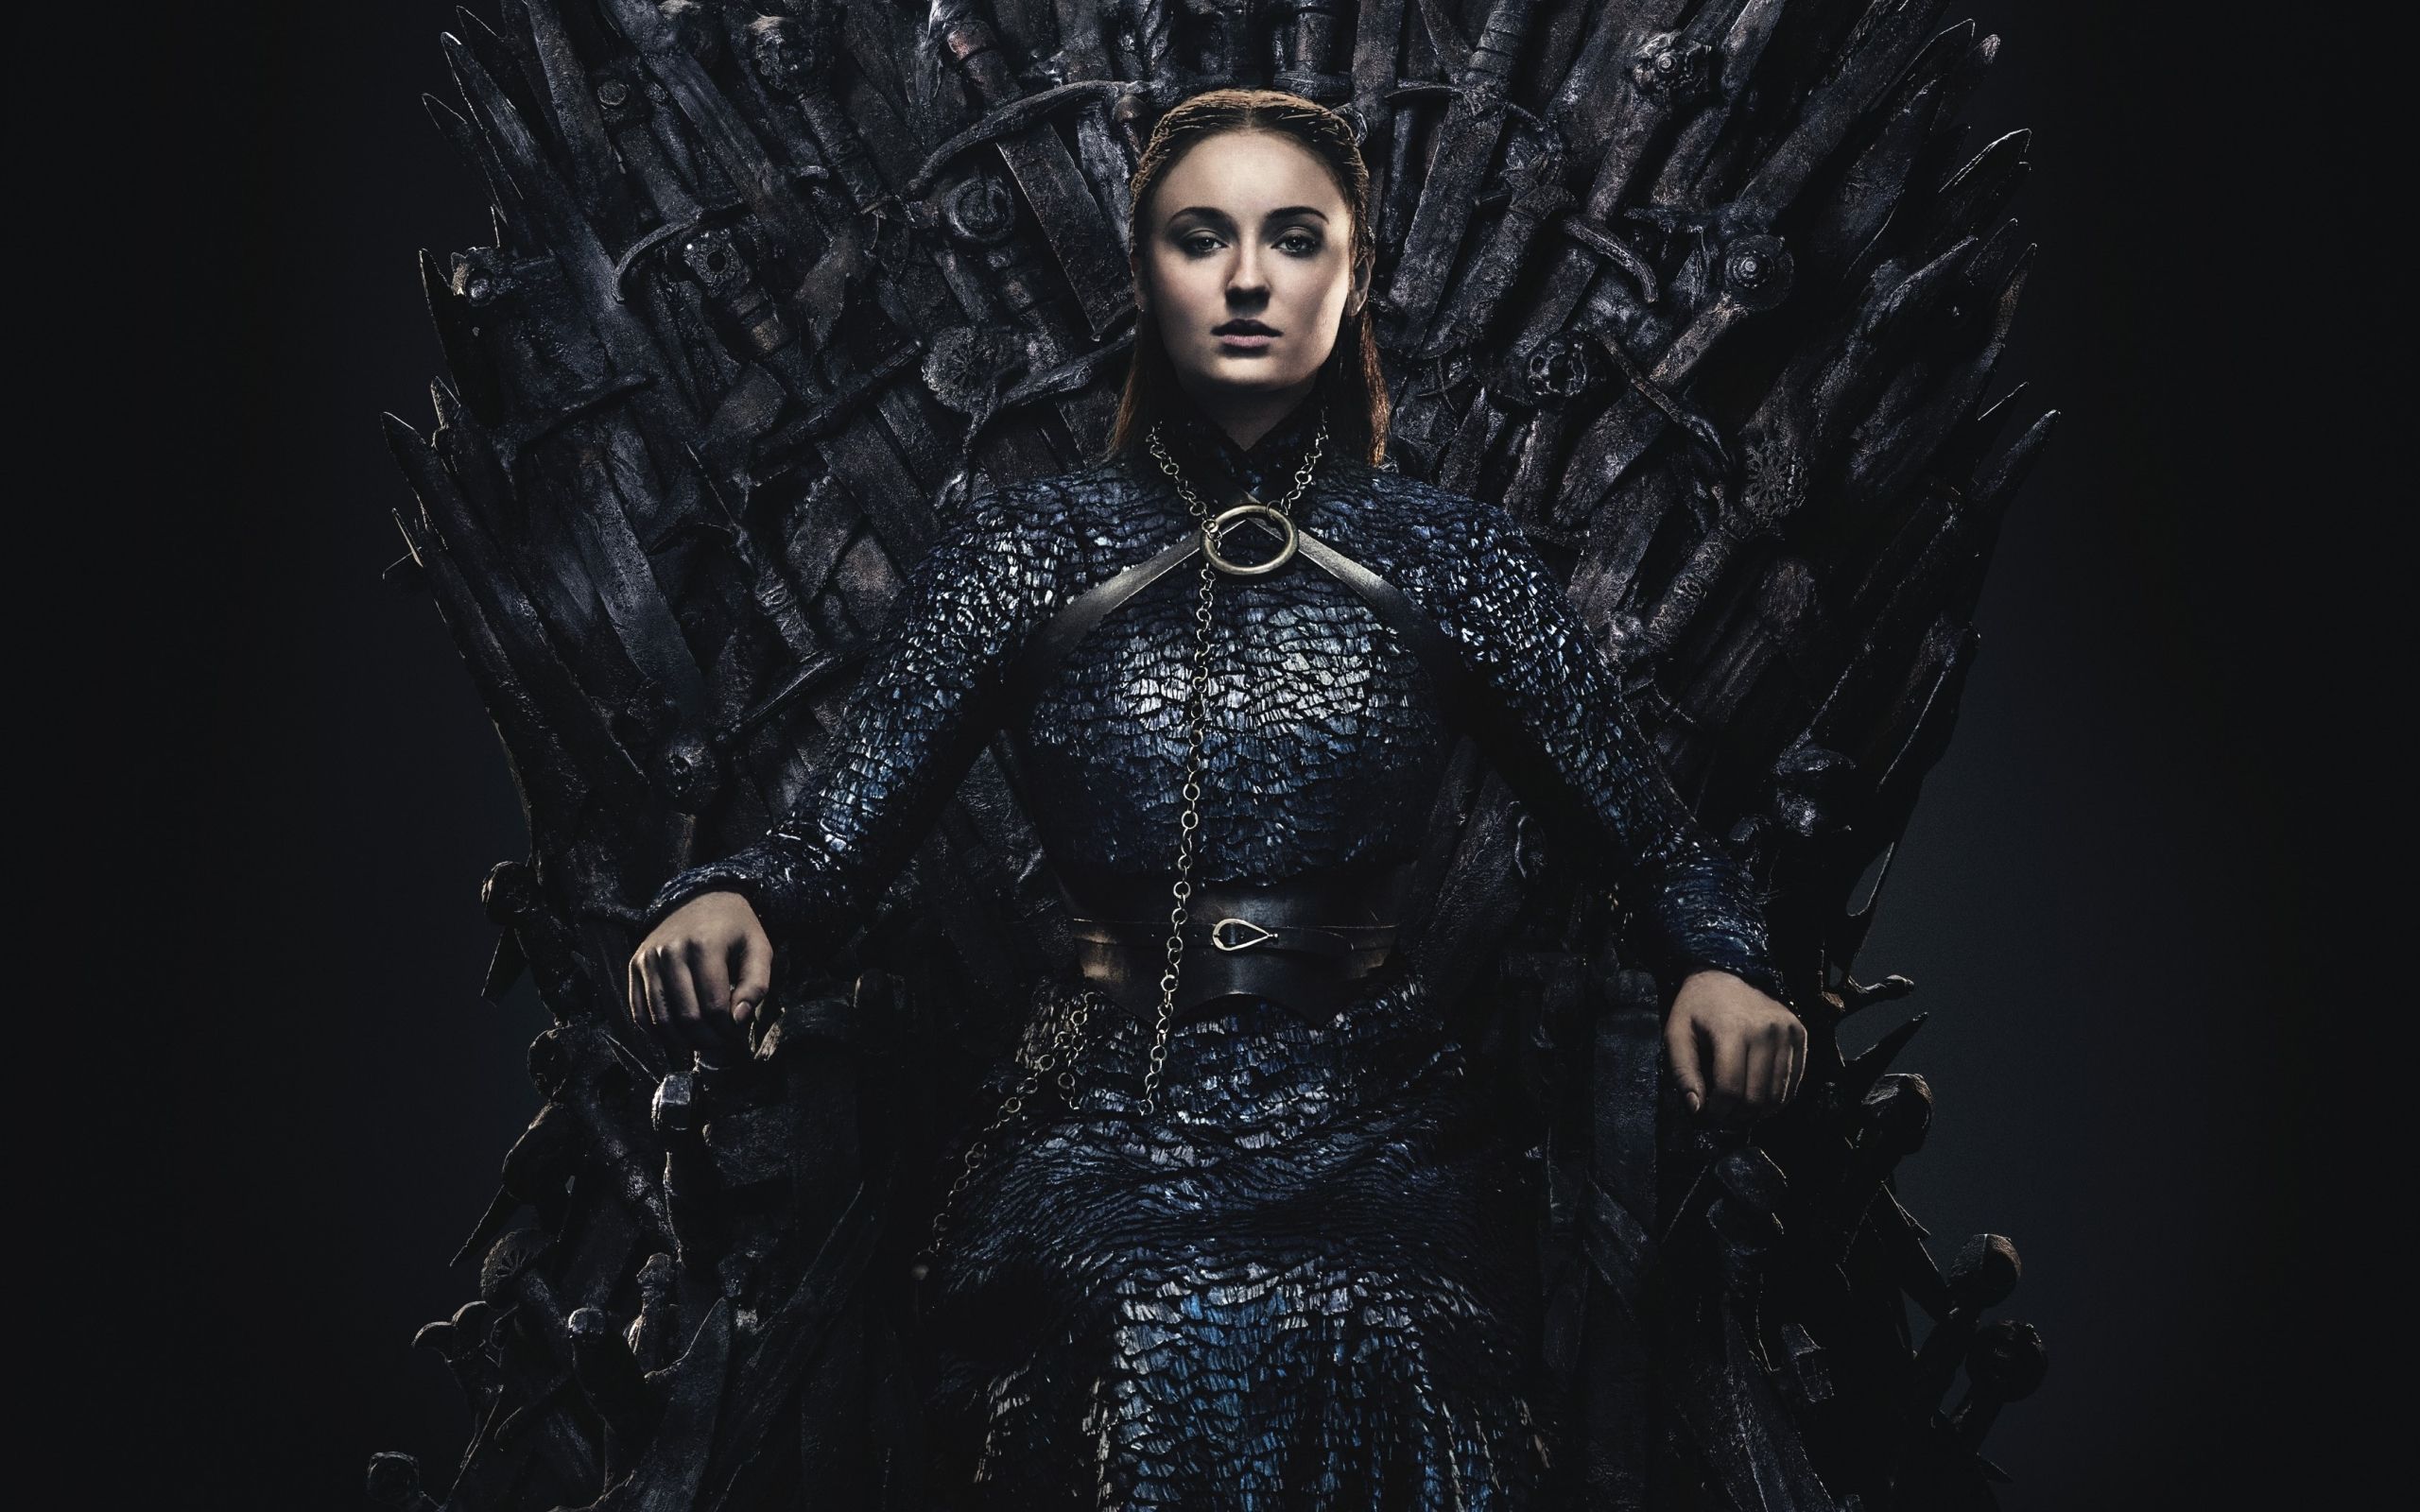 2560x1600 Wallpaper Of Sansa Stark Sophie Turner Game Of Throne